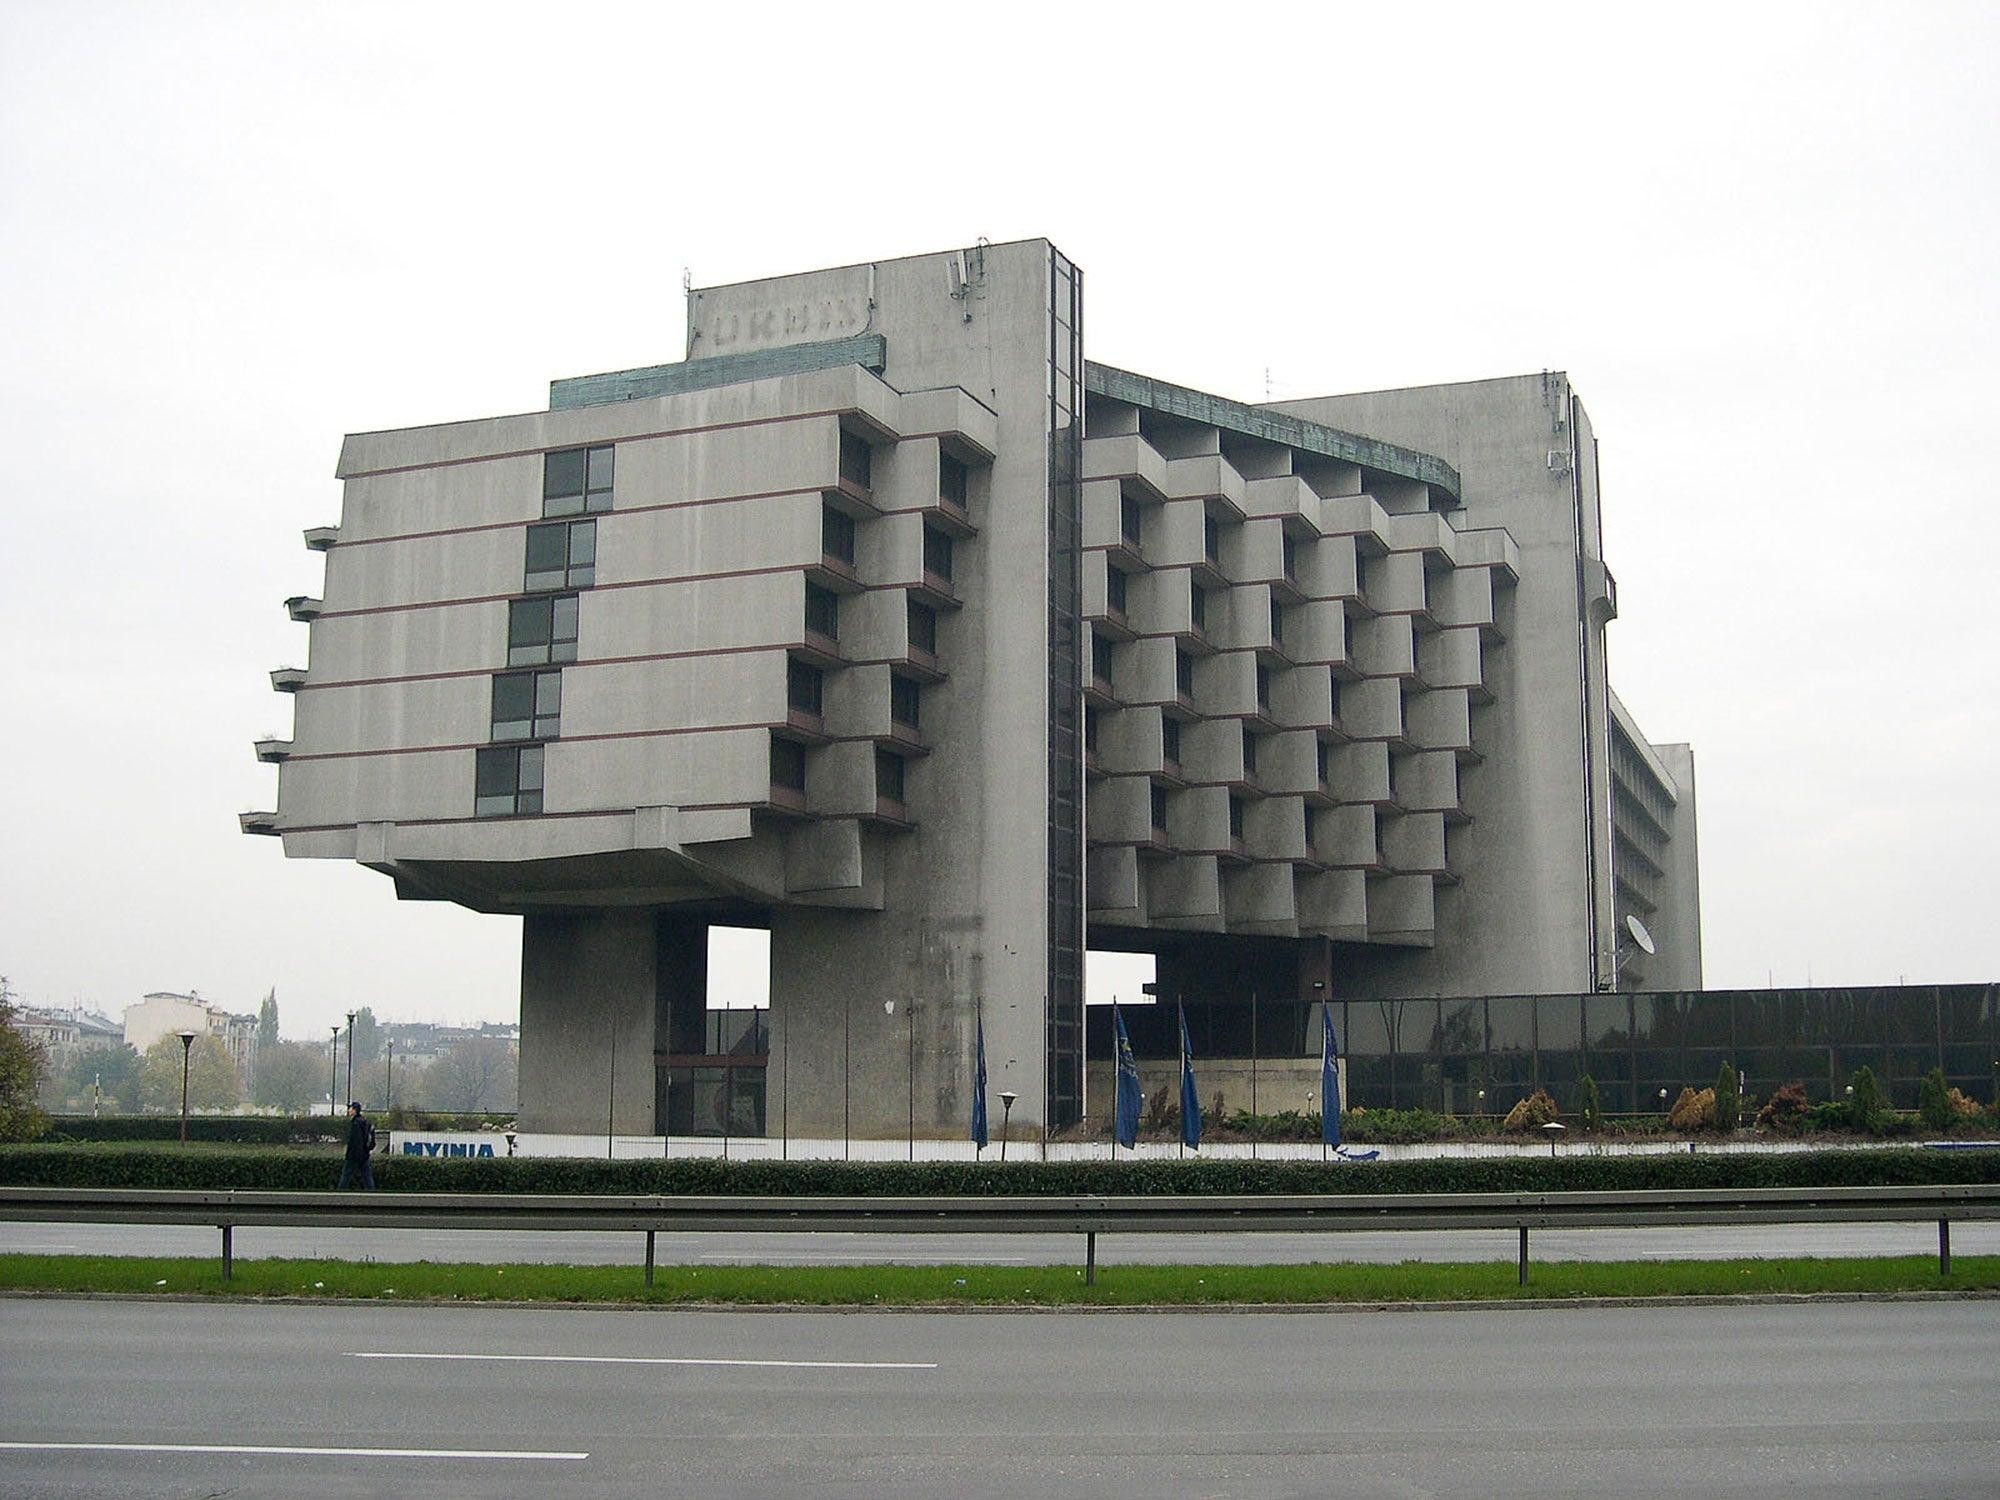 Отель «Форум», который был построен при советской власти в Кракове. Возведено здание причудливой формы было в 70-е годы прошлого века